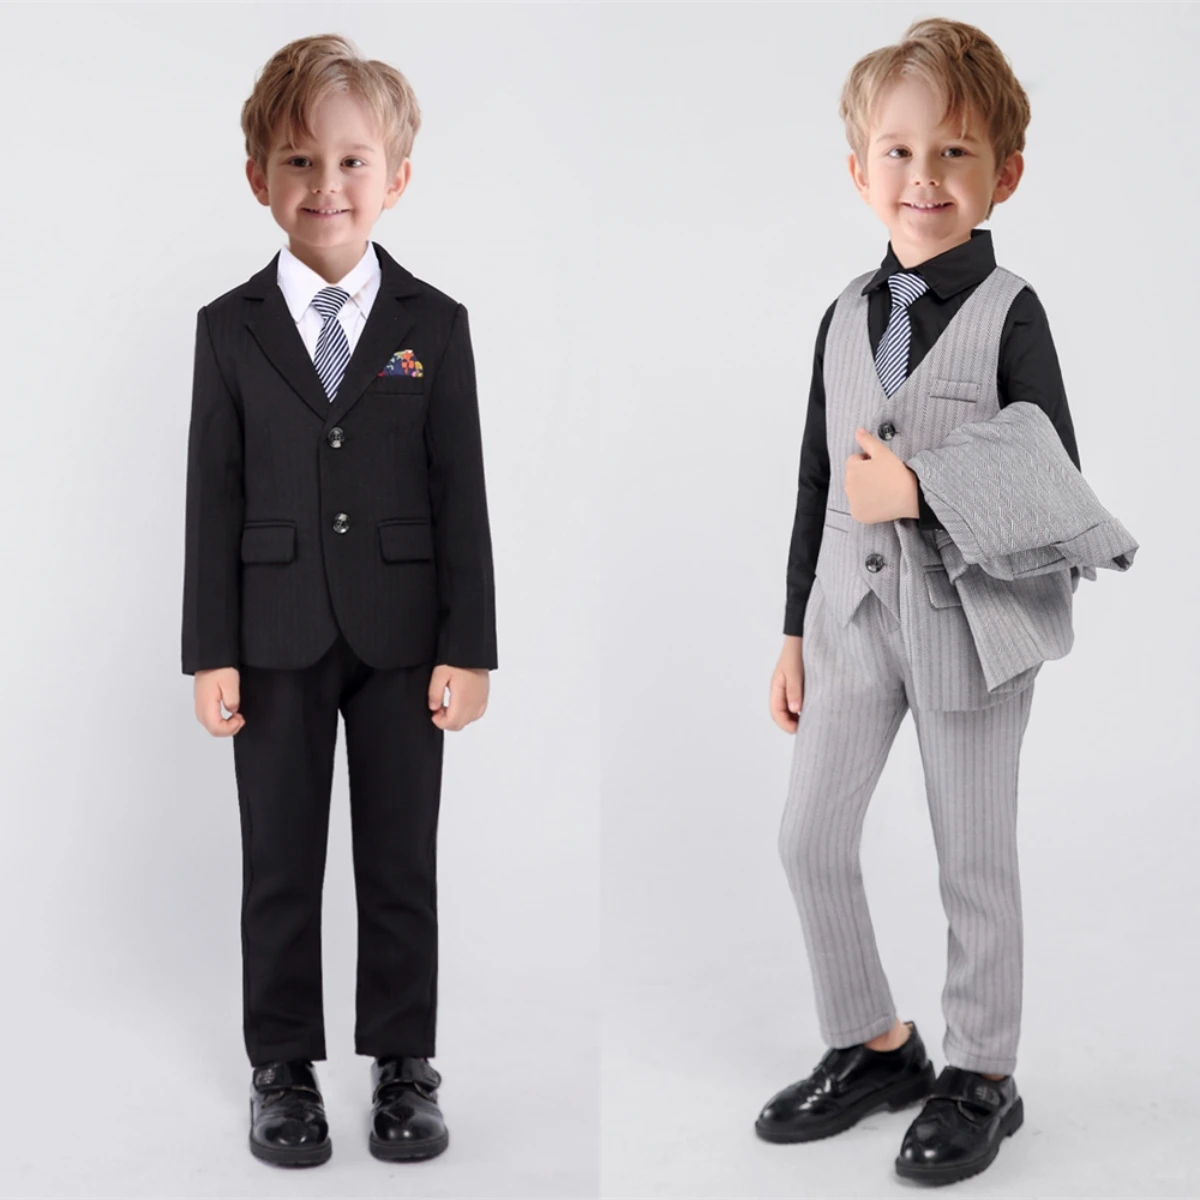 Новое поступление, комплект официальных костюмов в полоску для мальчиков, смокинг для свадебной вечеринки, кольцо на предъявителя, 4 предмета, Блейзер, брюки, жилет, включая галстук